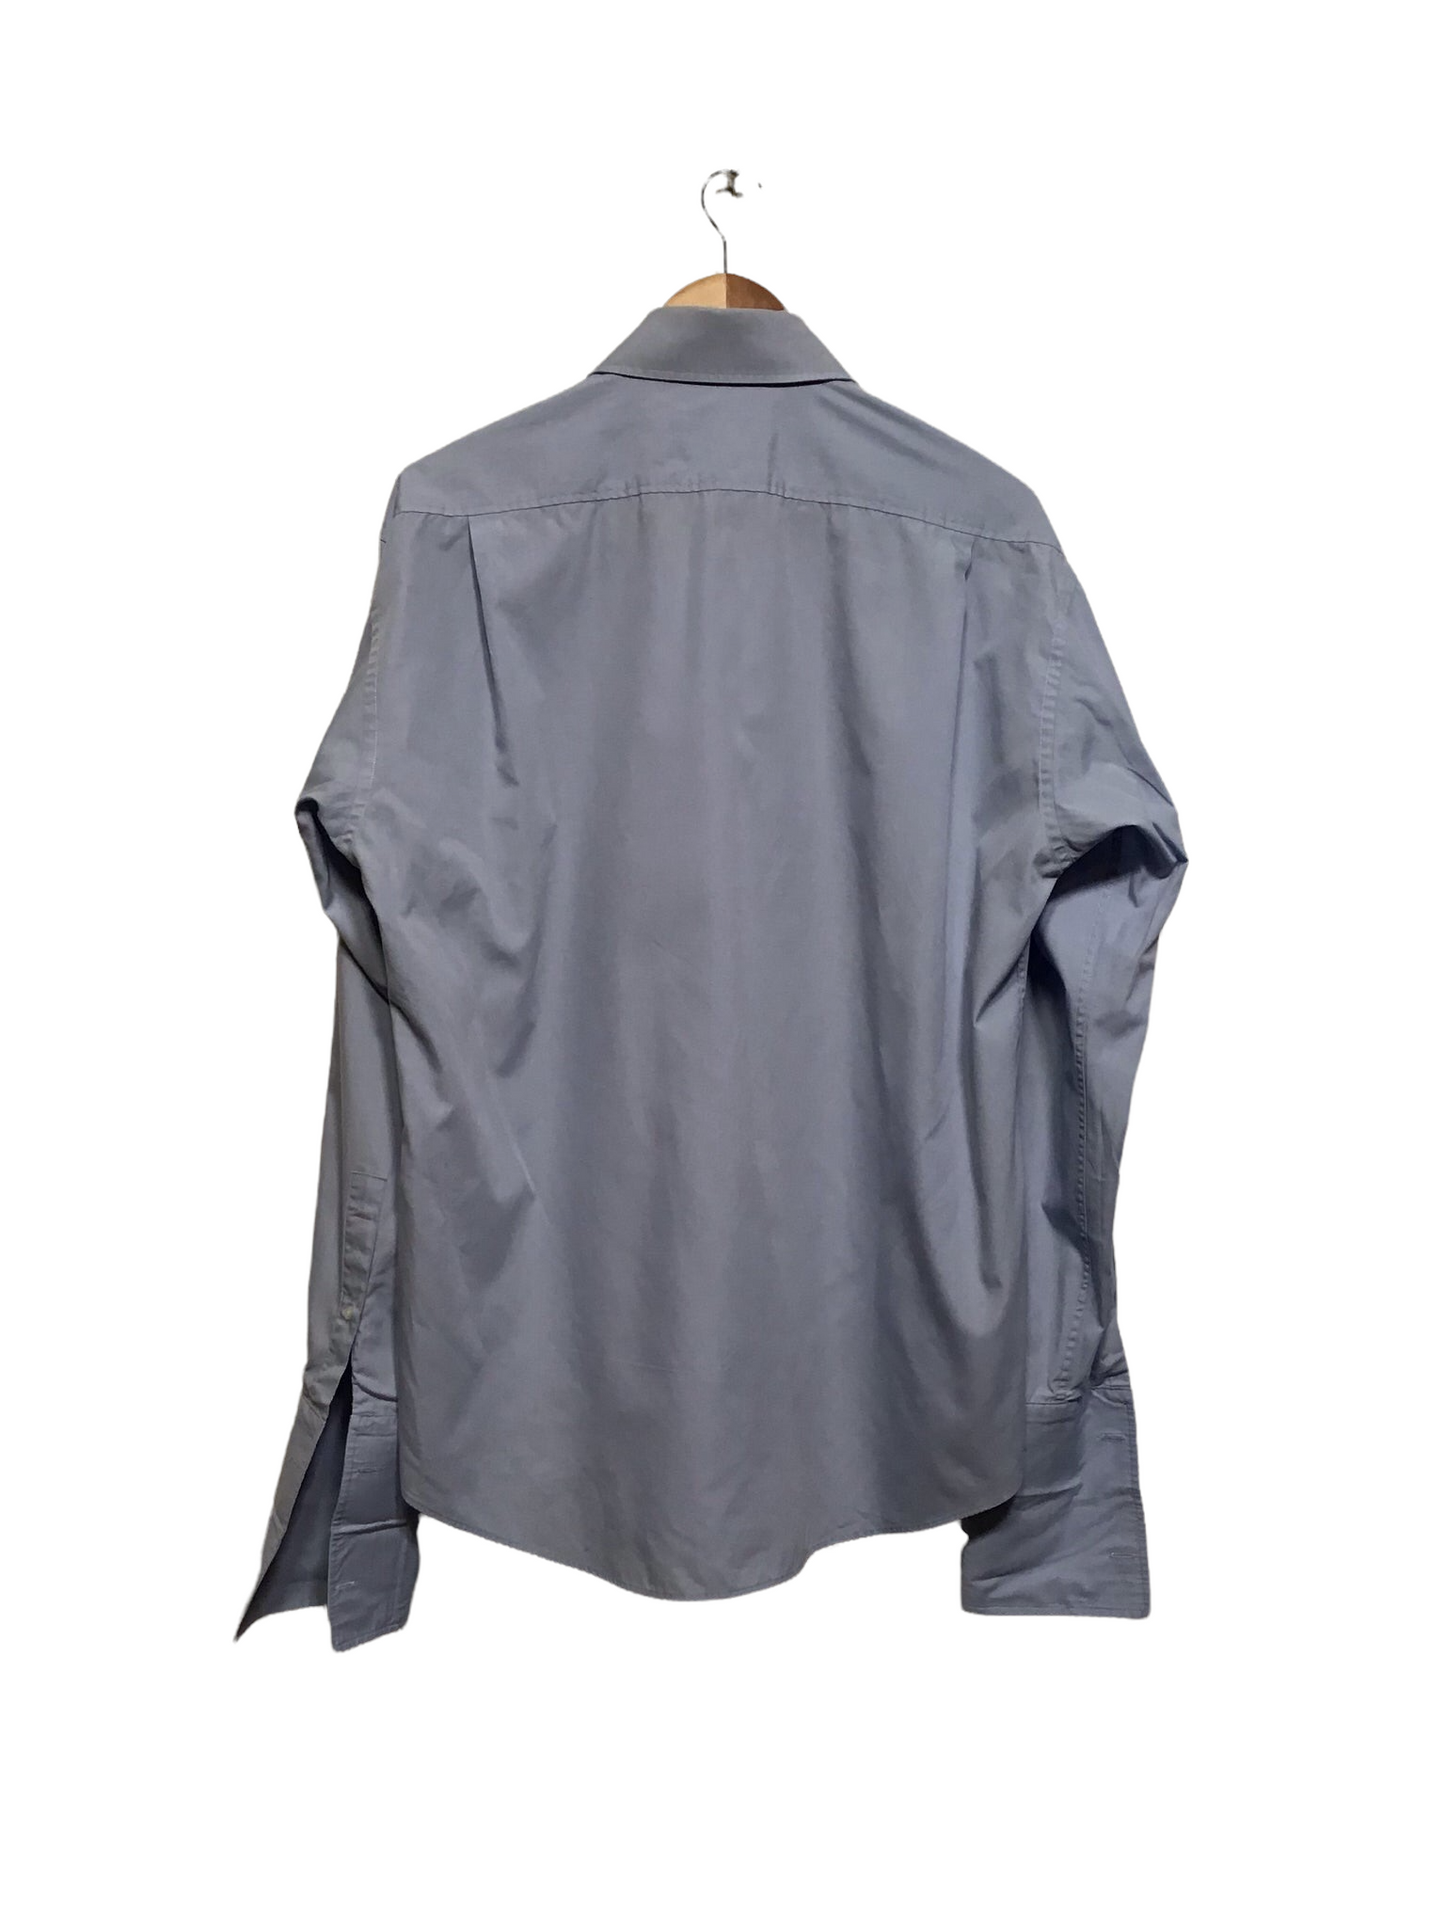 Yves Saint Laurent Shirt (Size L)